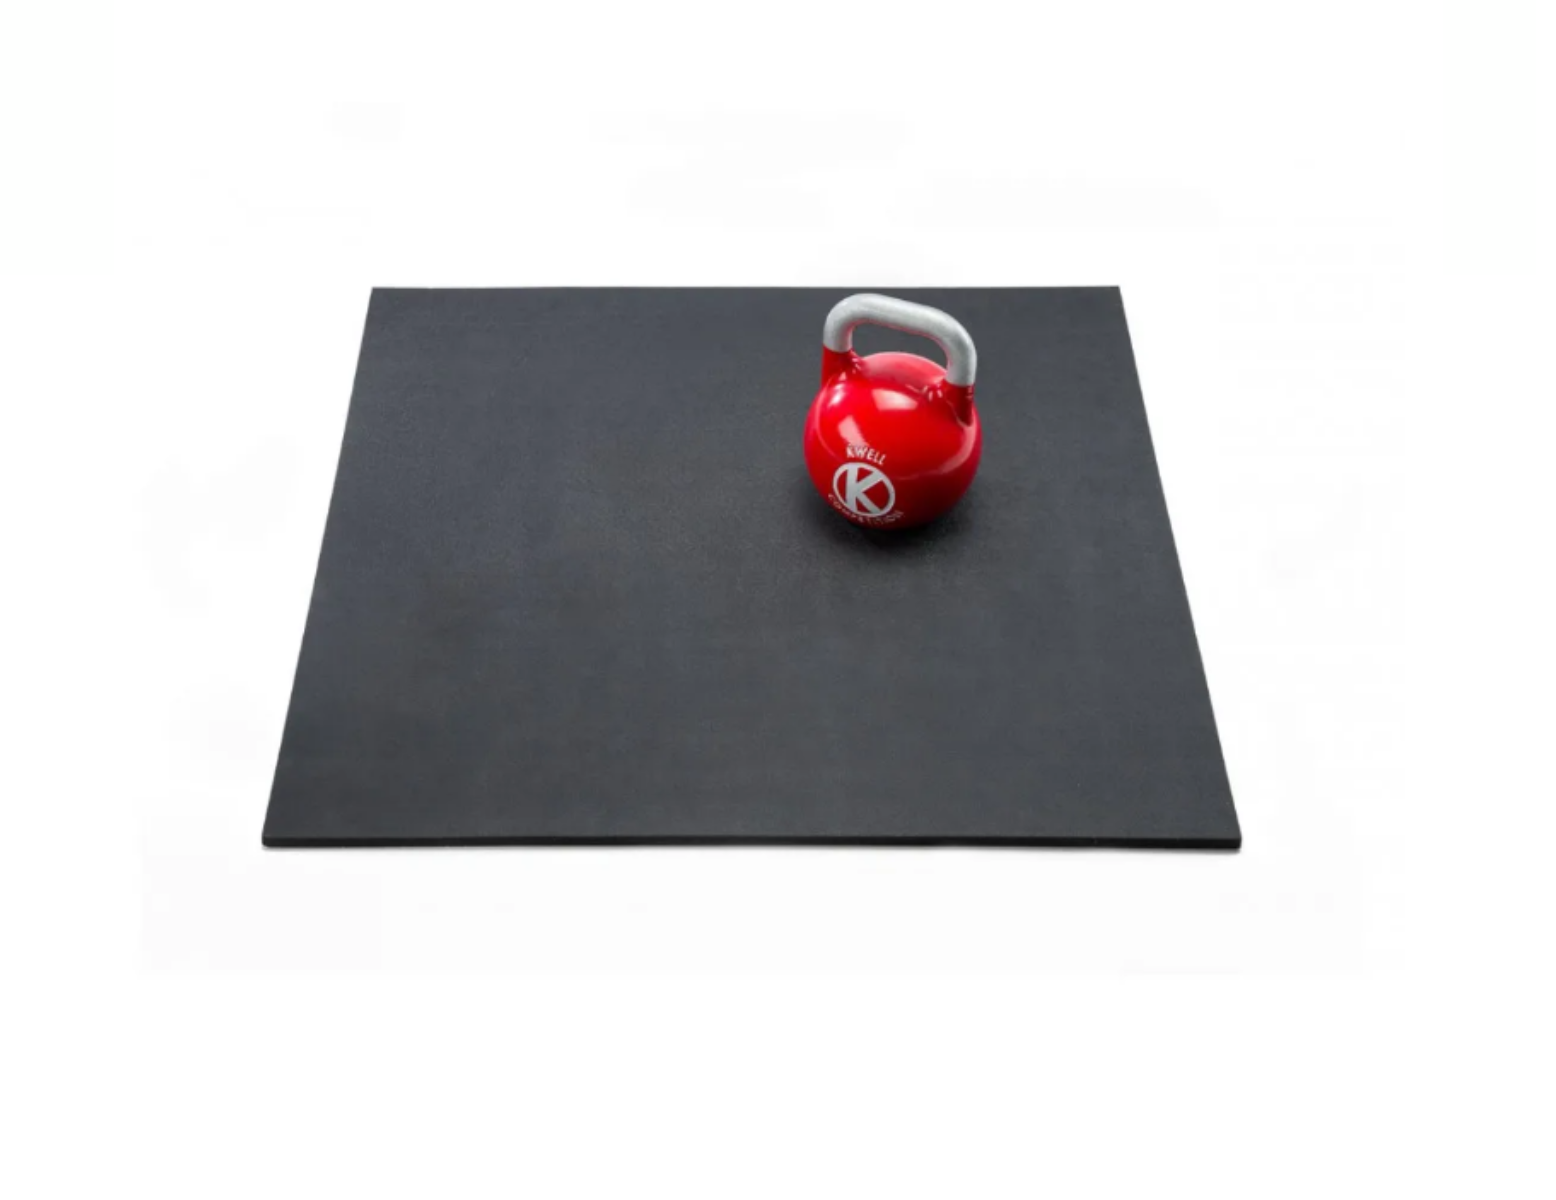 Kwell Pavi-K dalle en caoutchouc - surface en TPE - 100 x 100 x 1,5cm - noir